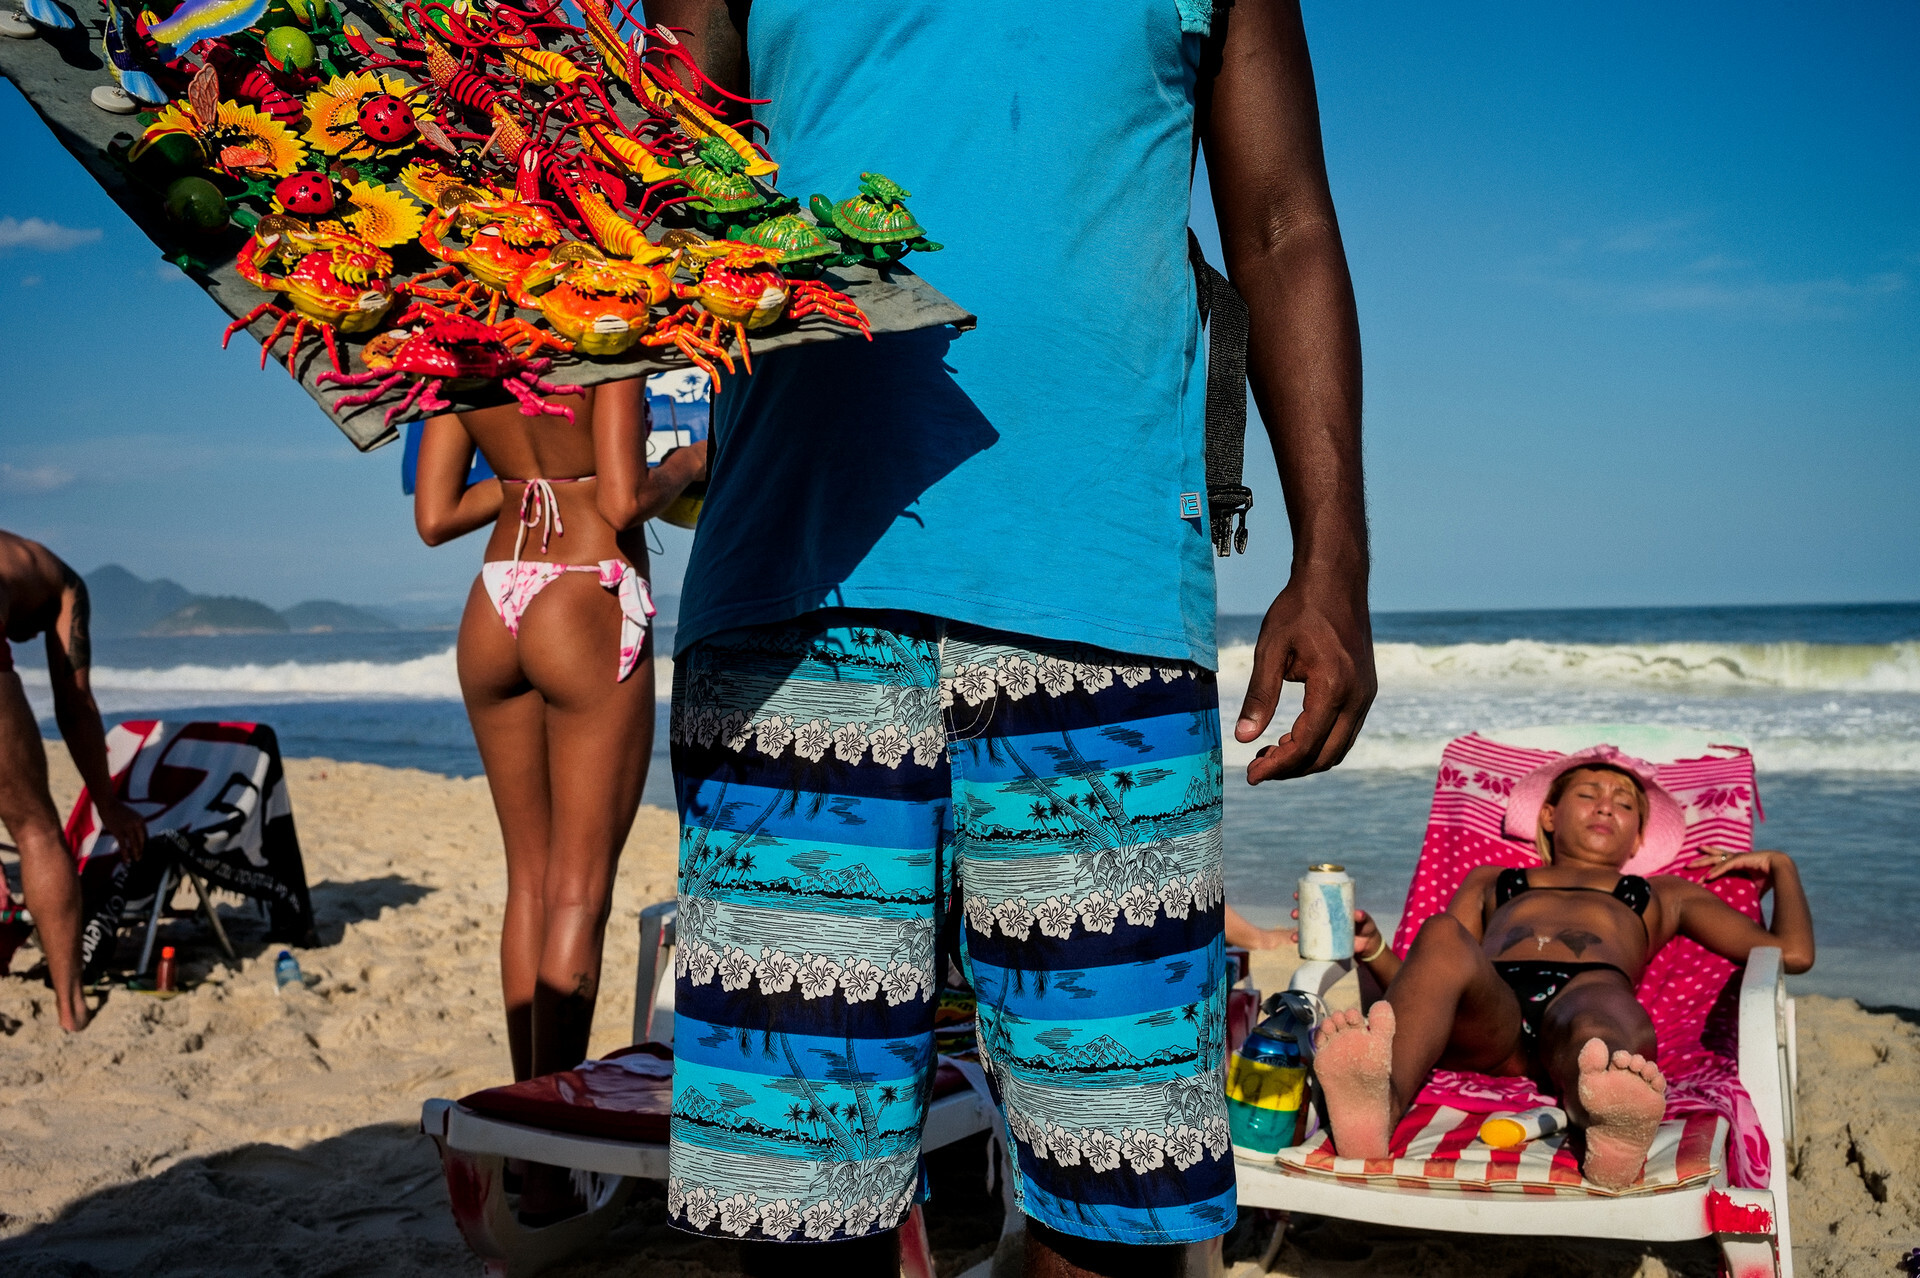 Продавец магнитиков на пляже в Рио-де-Жанейро. Фотограф Дэвид Алан Харви